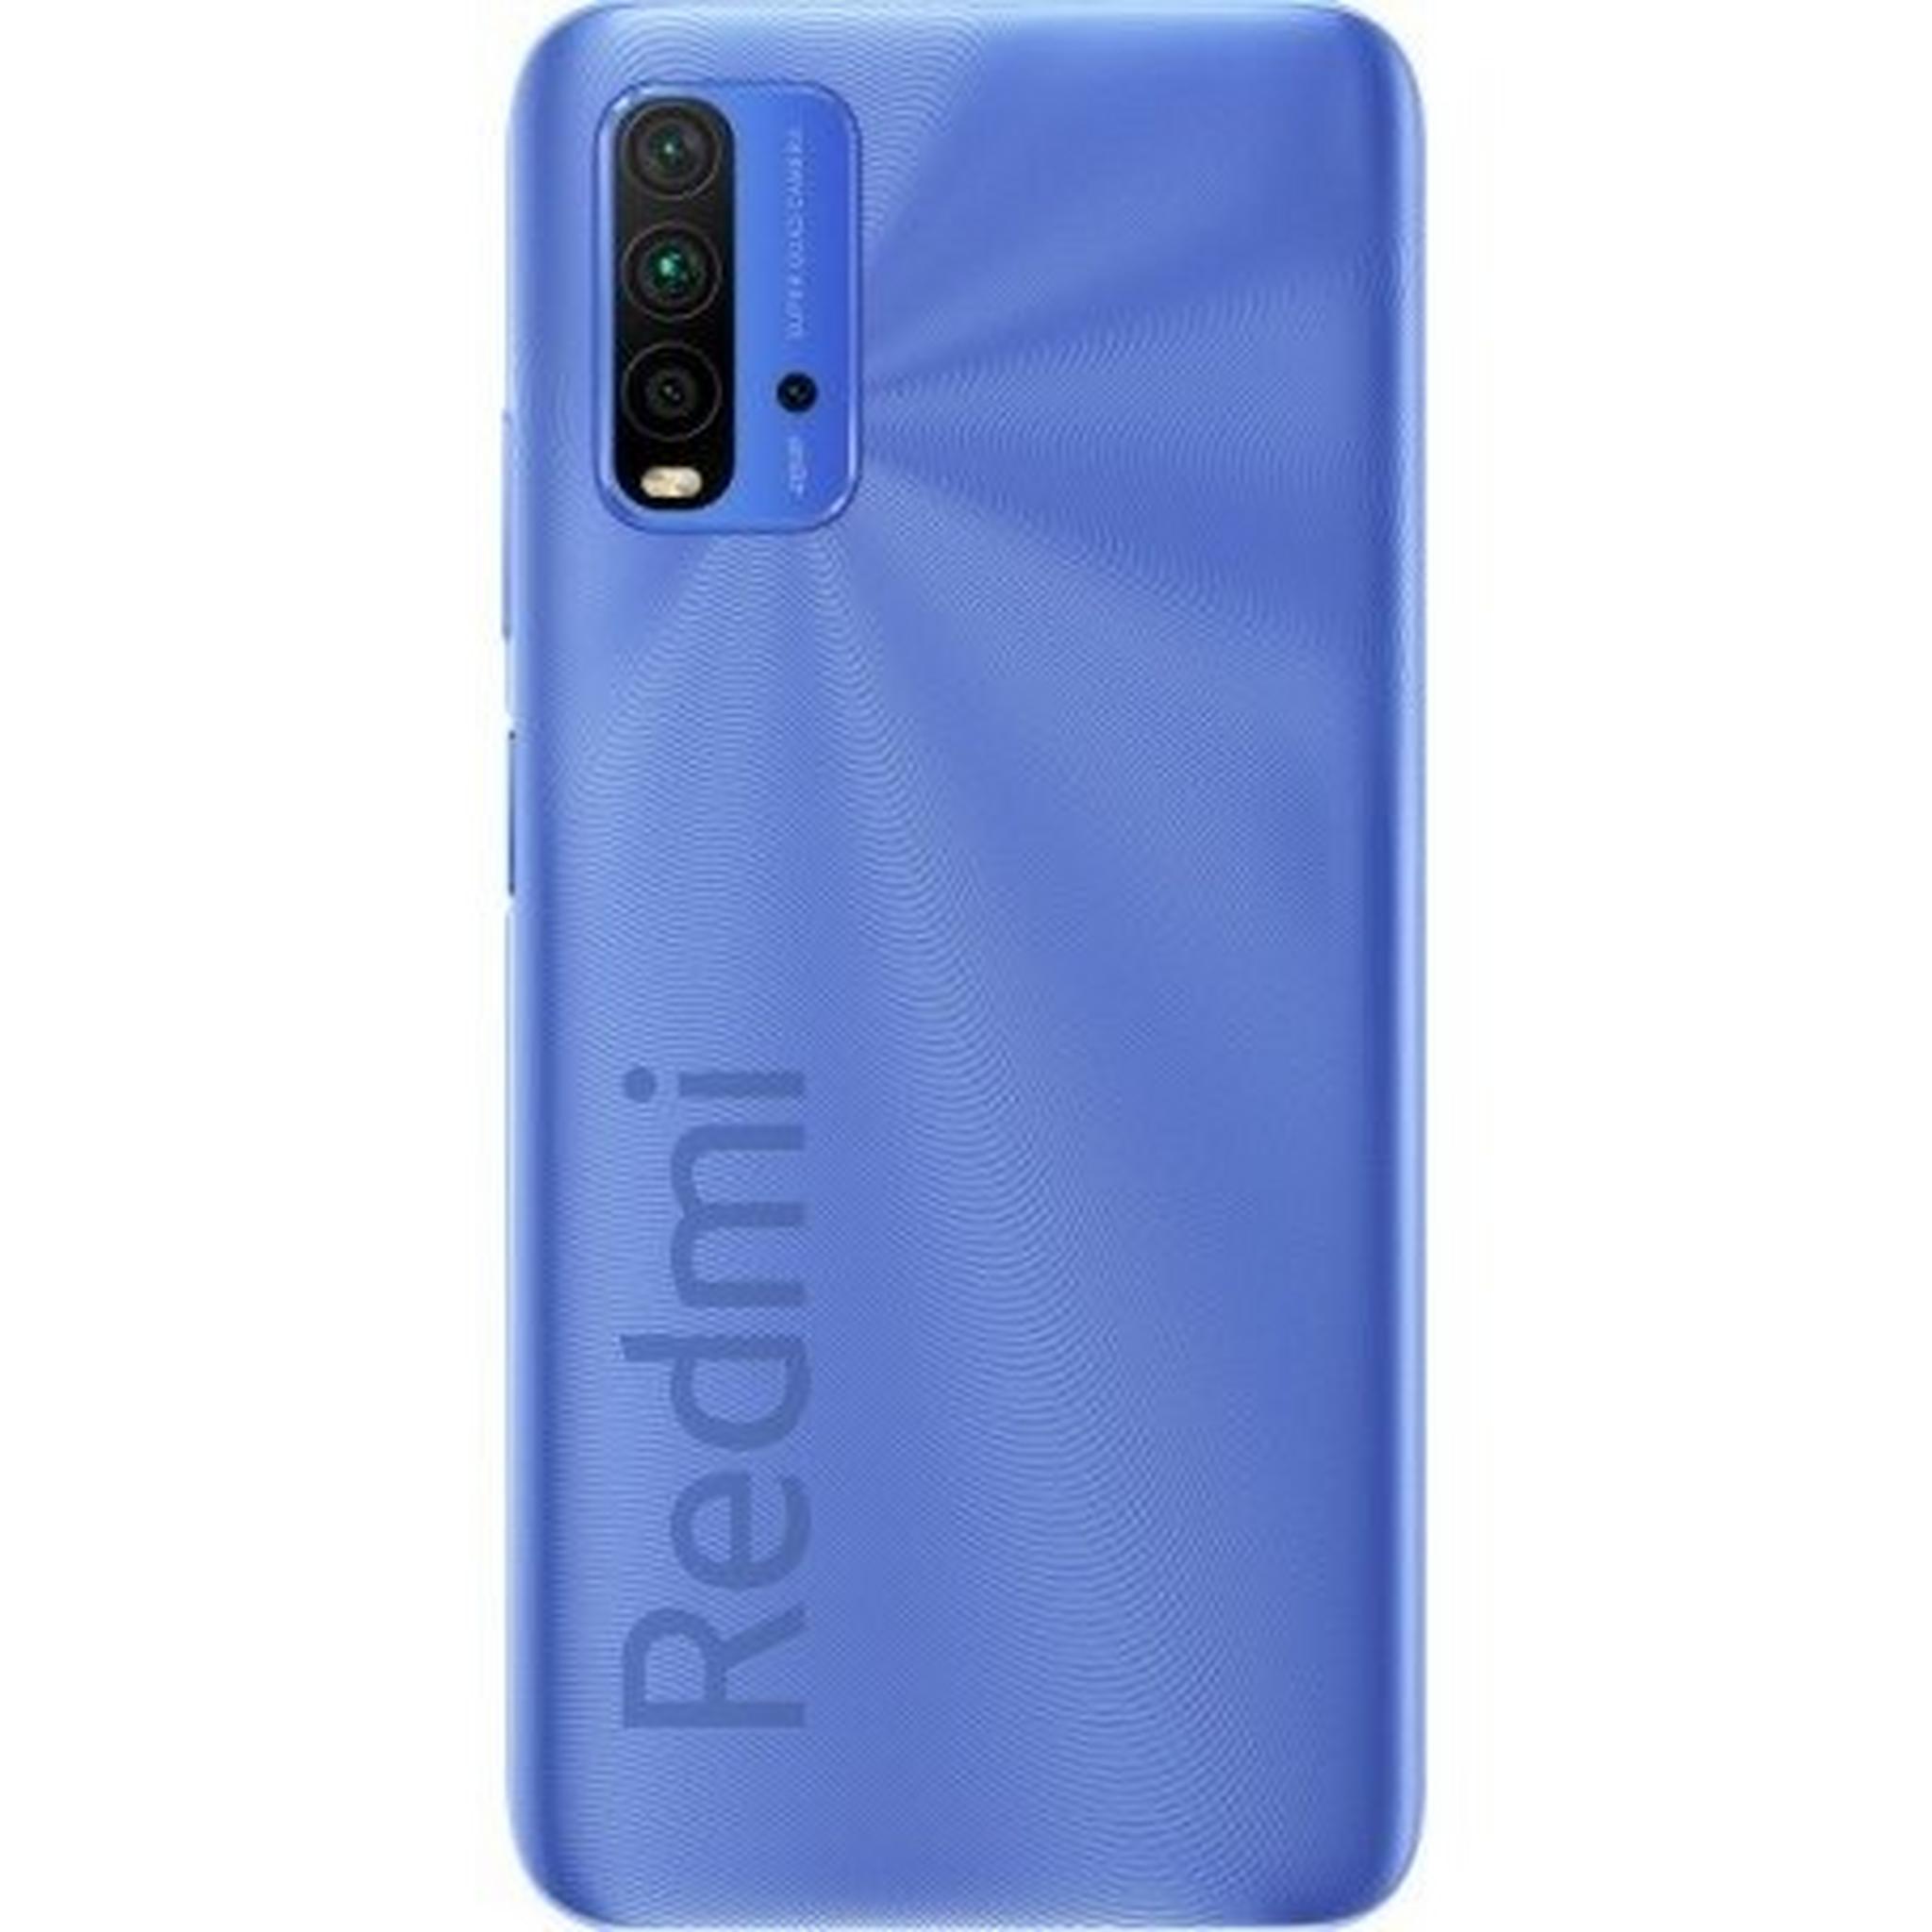 Xiaomi Redmi 9T 128GB Phone – Blue